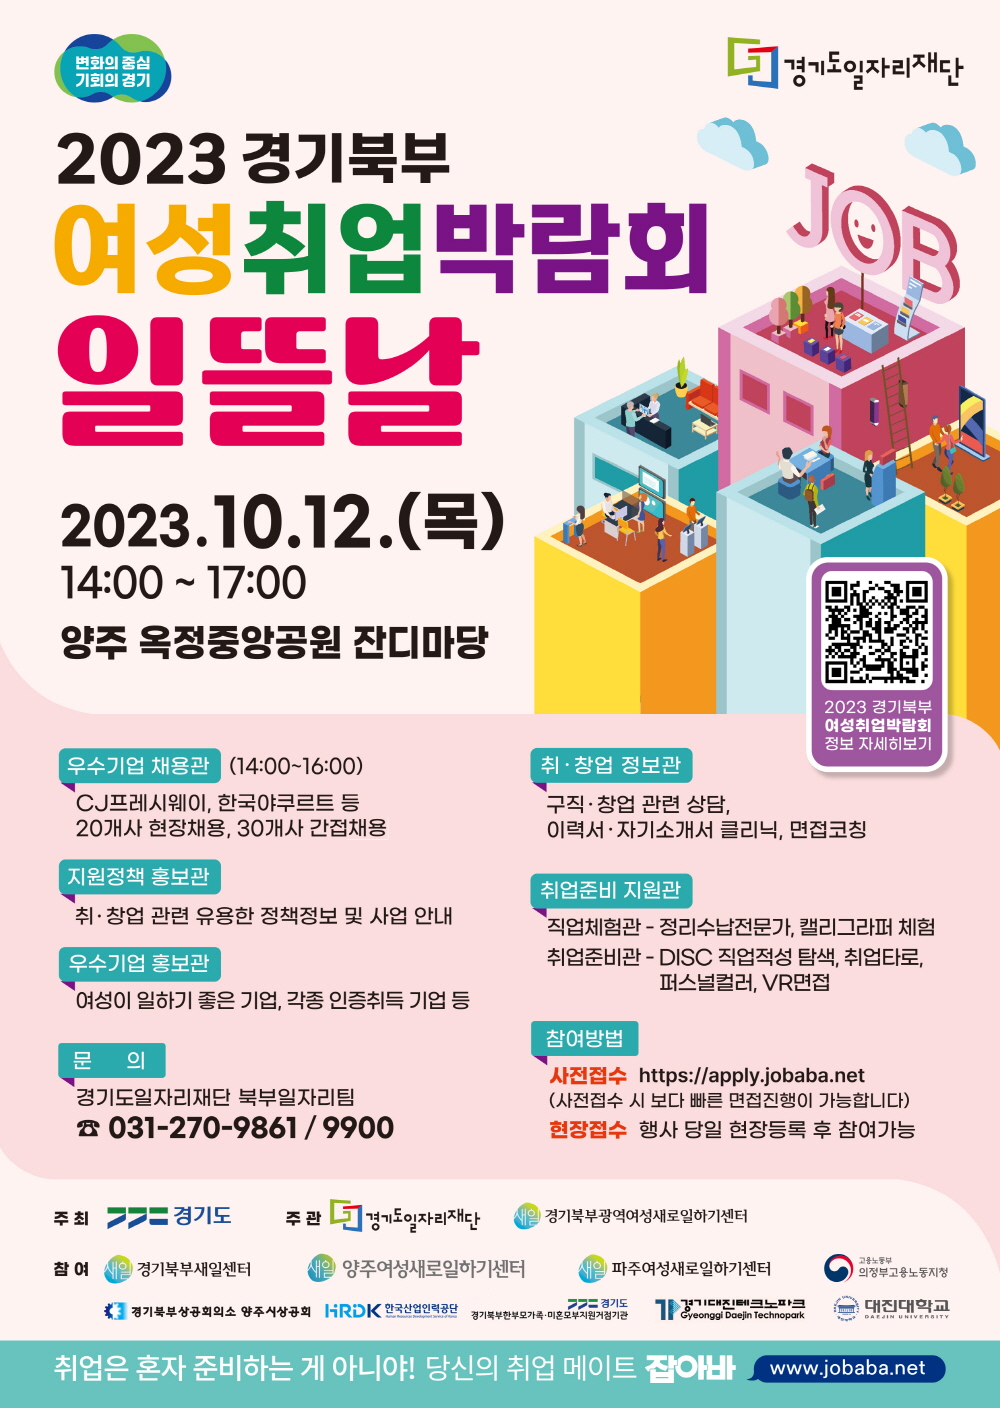 양주시 경기북부 여성취업박람회 ‘일뜰날’ 10월12일 개최